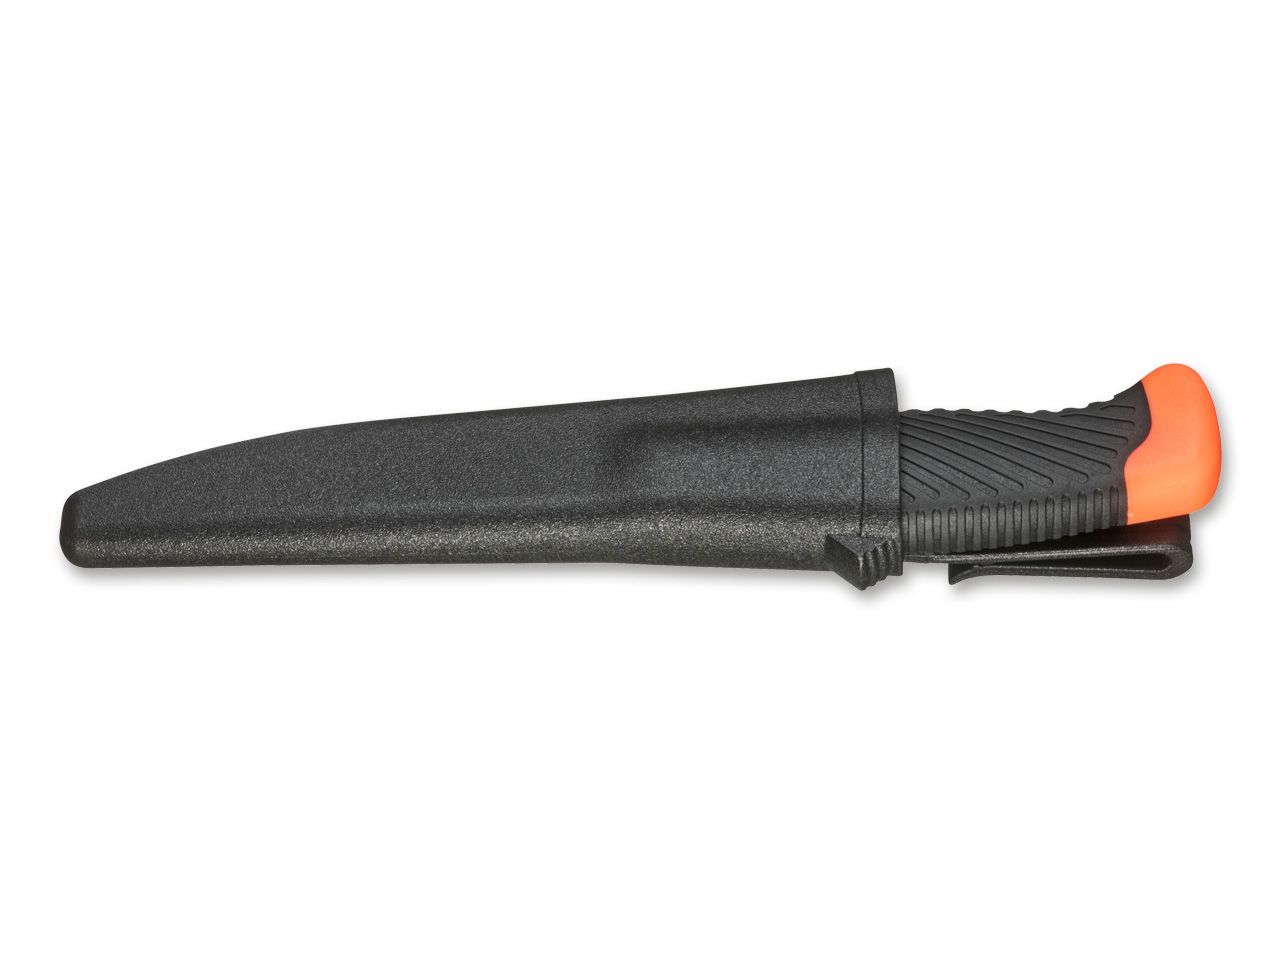 Нож рыбацкий с фиксированным клинком Magnum Falun, сталь 420 Satin Plain, рукоять полипропилен/термопластик, 02RY100 от Ножиков